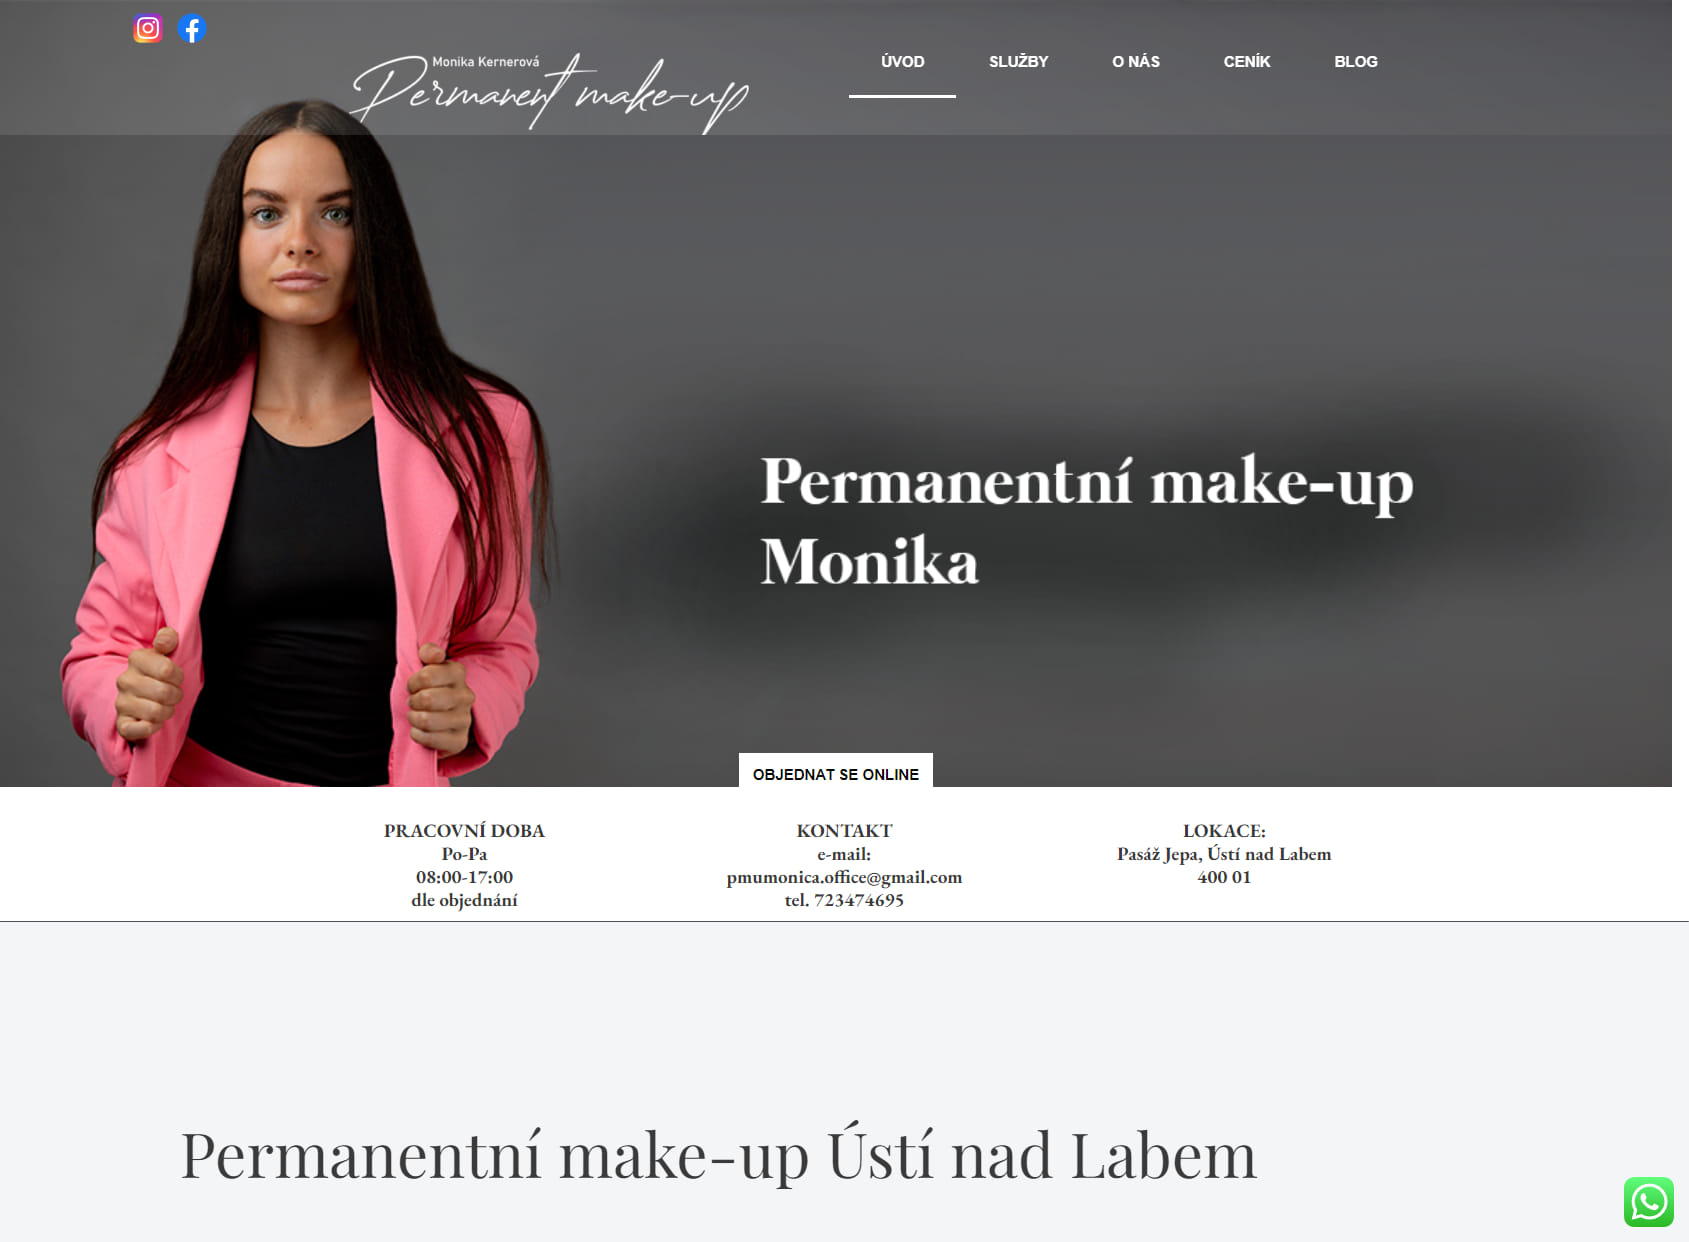 Kosmetický salon a permanentní make-up Monika Kernerová